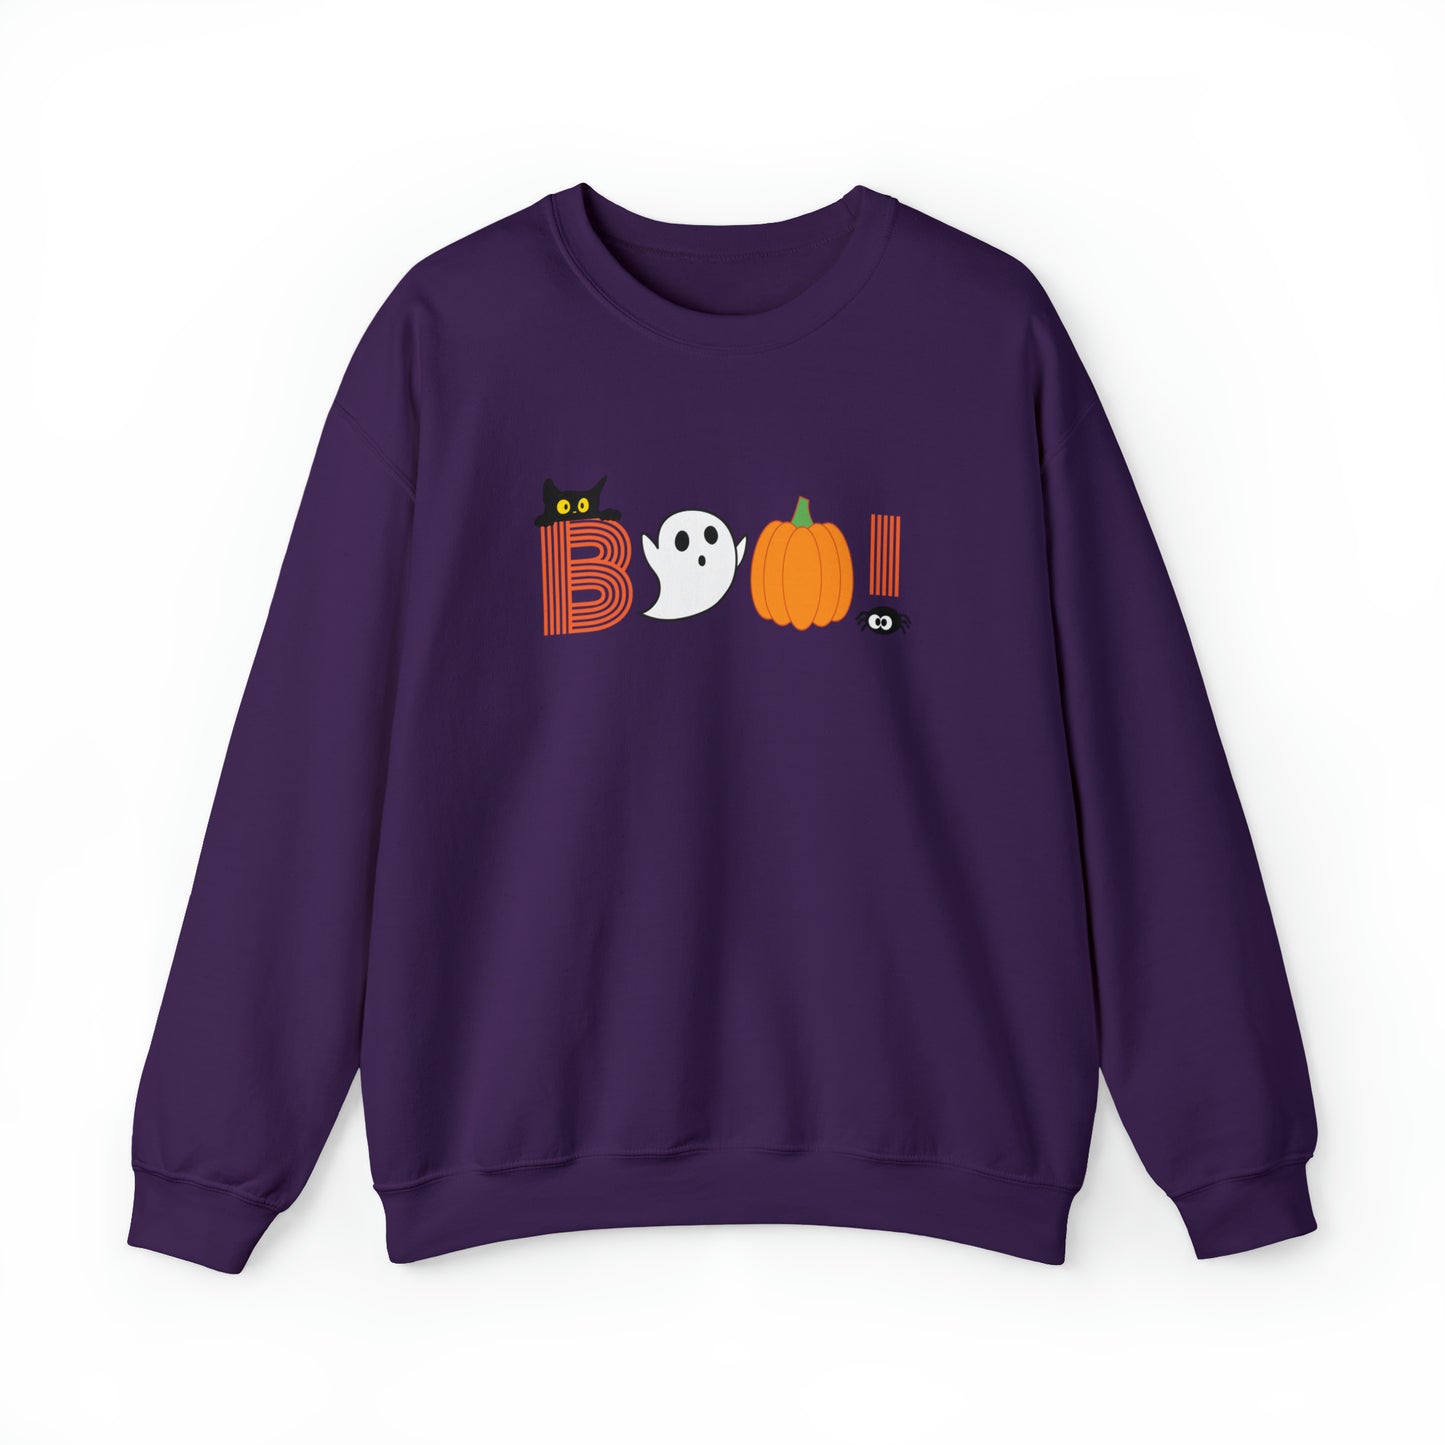 Boo! Halloween Sweatshirt